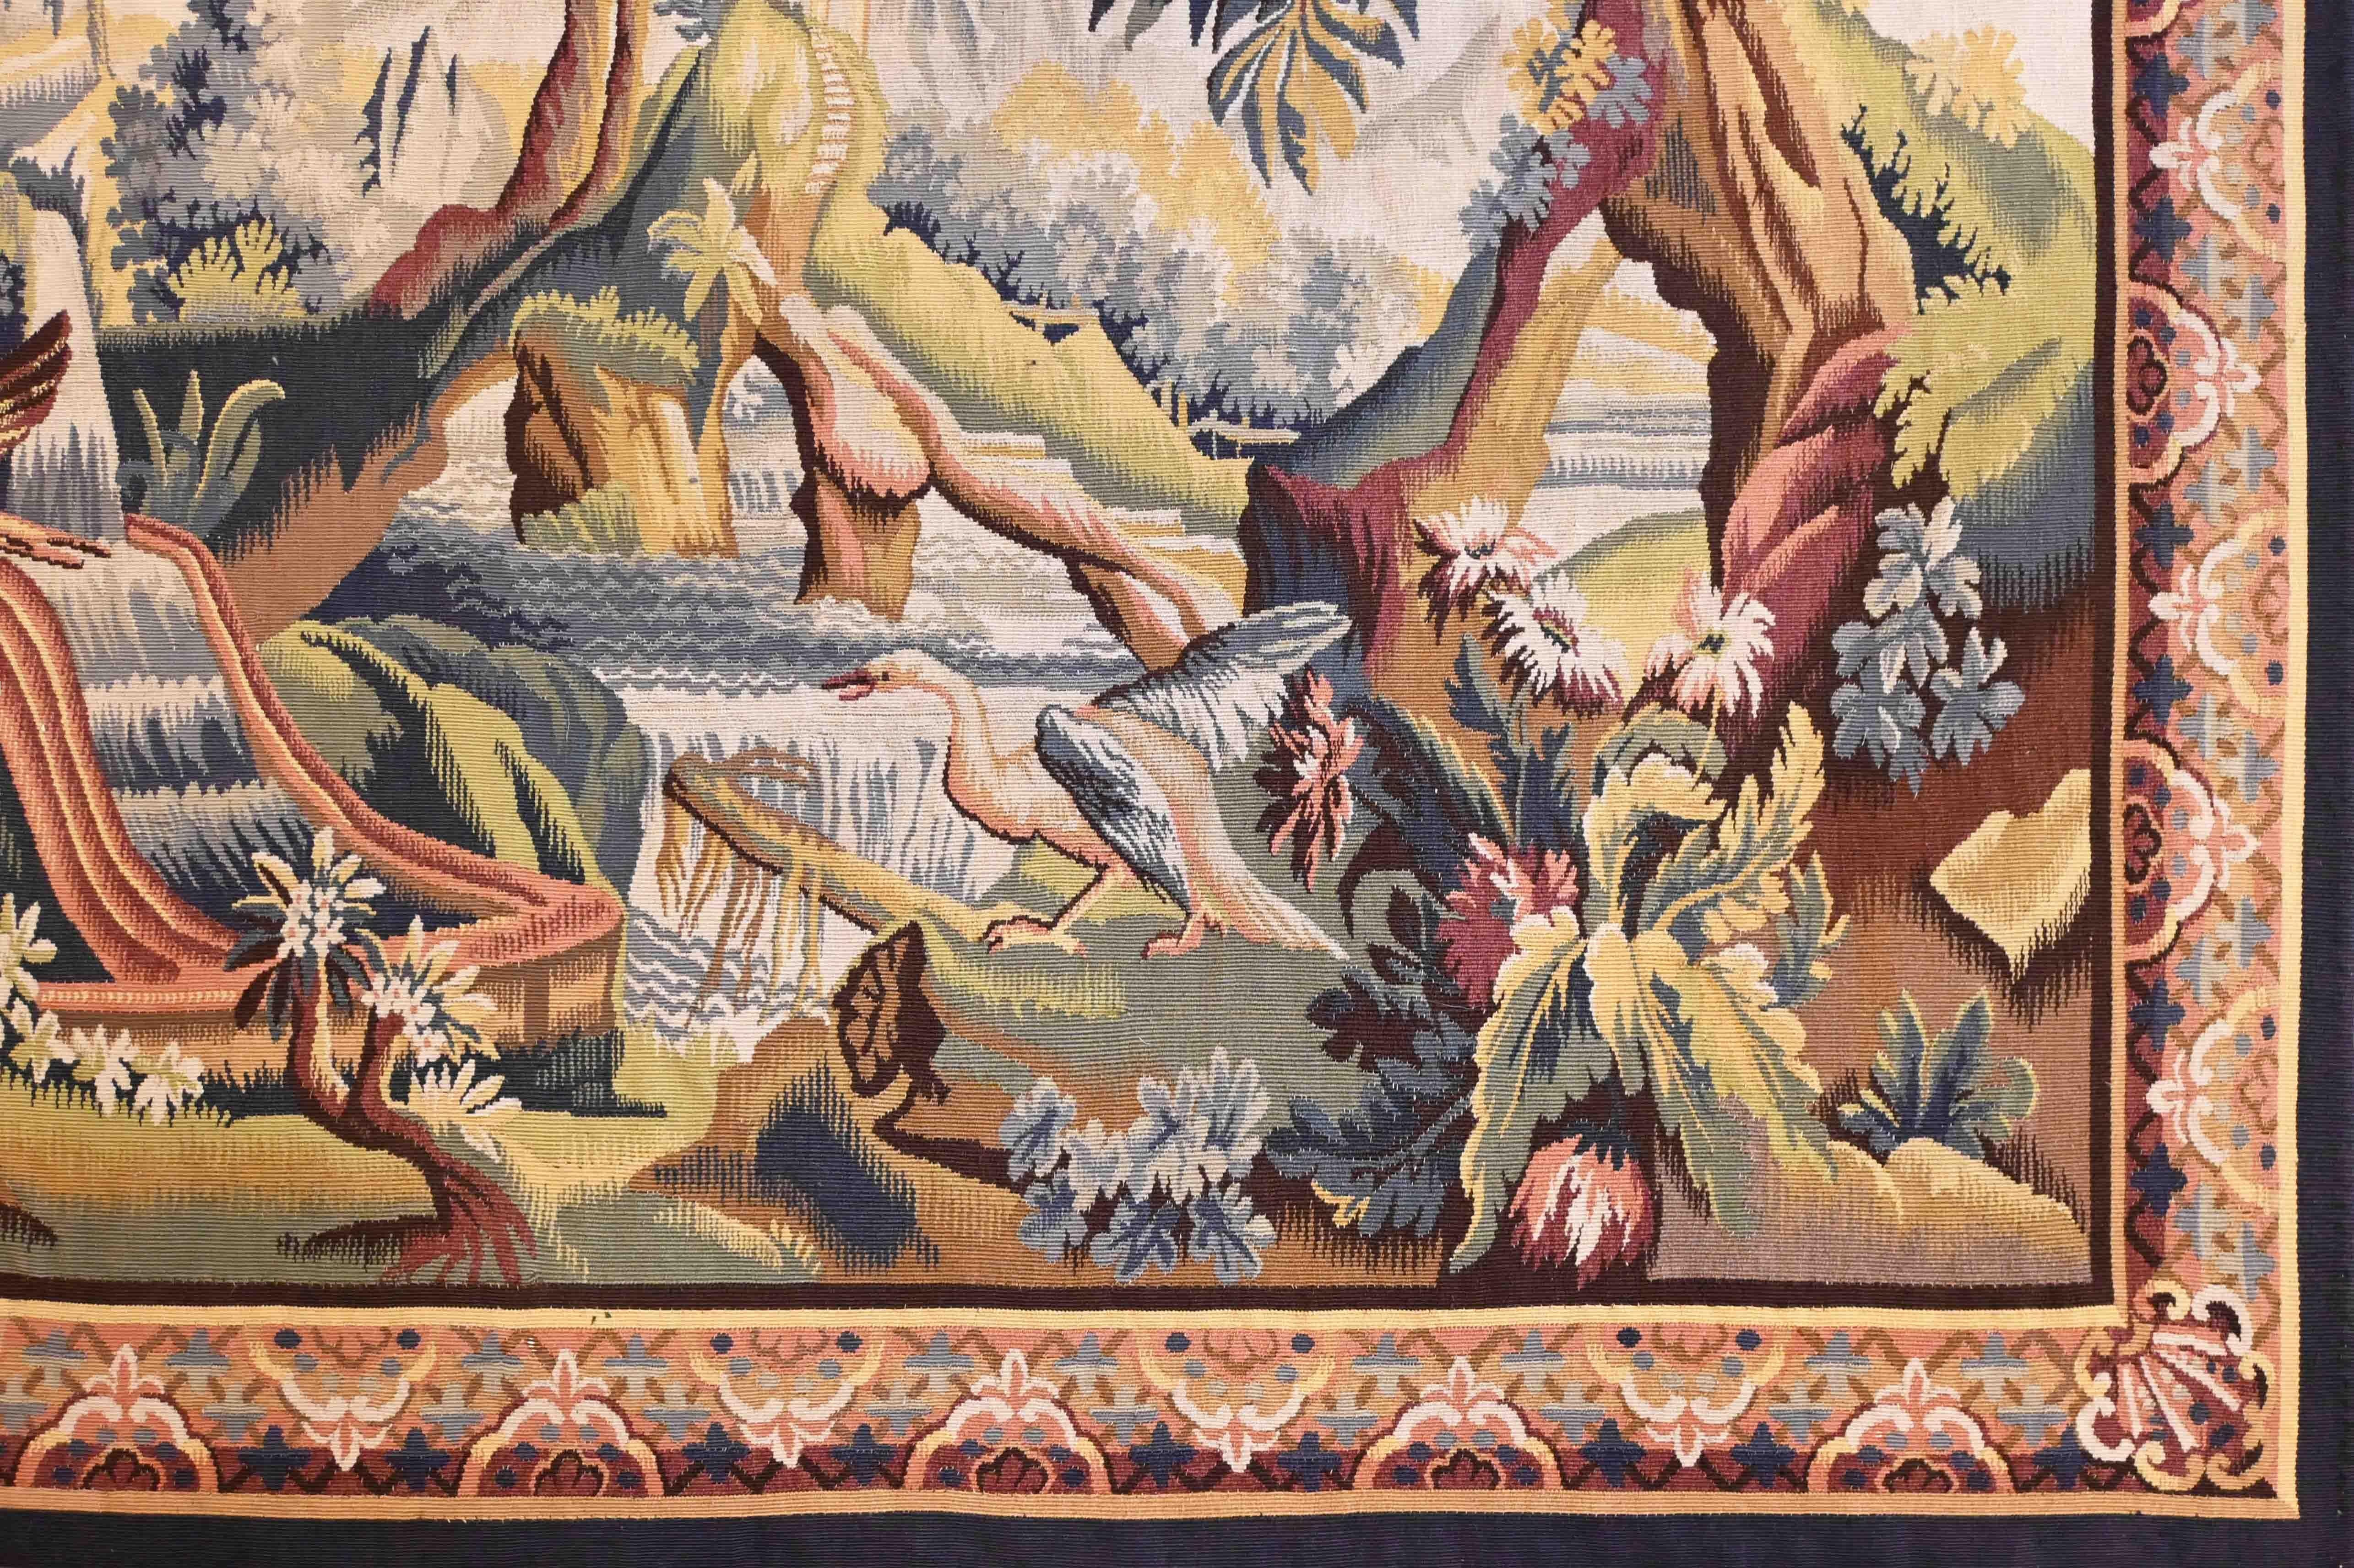 très jolie tapisserie d'Aubusson du 19ème siècle aux couleurs rouge et bleu et blanc, un temple et des rivières en très bon état- N° 1240

Grâce à notre atelier de restauration-conservation et aussi à notre savoir-faire, 
nous avons le plaisir de